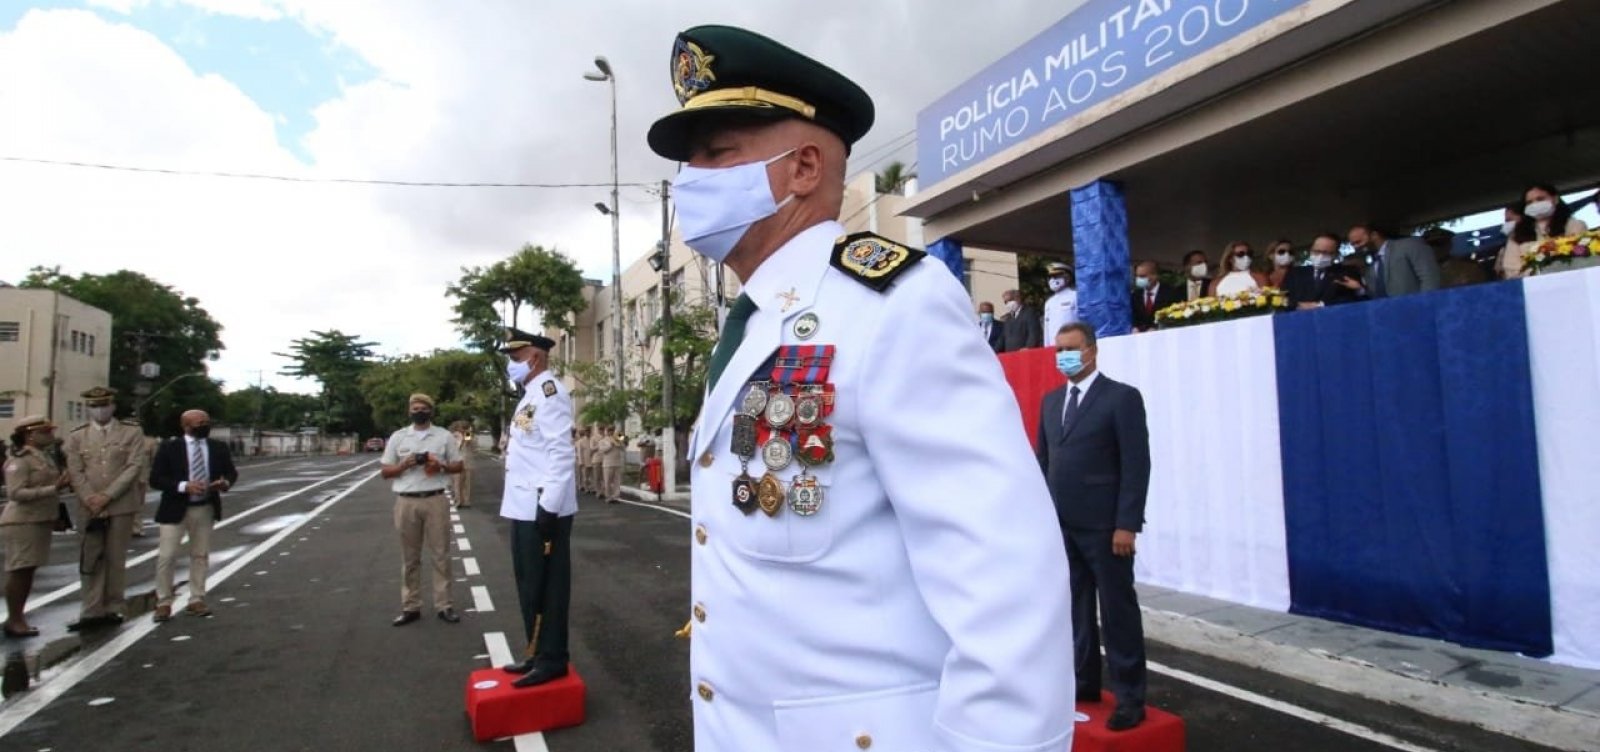 [Novo comandante, coronel Coutinho, é nomeado pela Polícia Militar da Bahia]